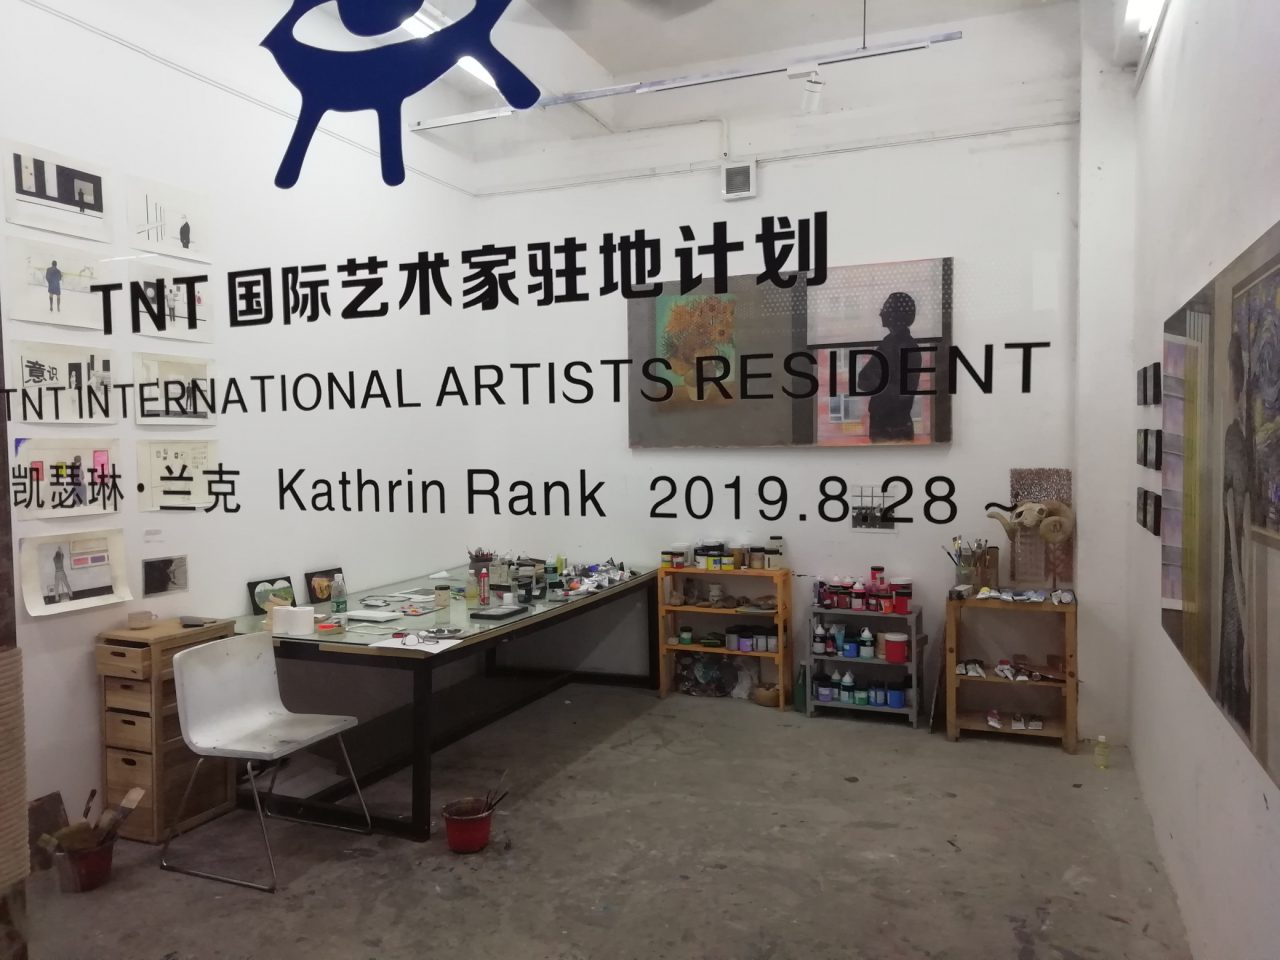 International Artist Residence TNT, Dafen, Shenzhen, China